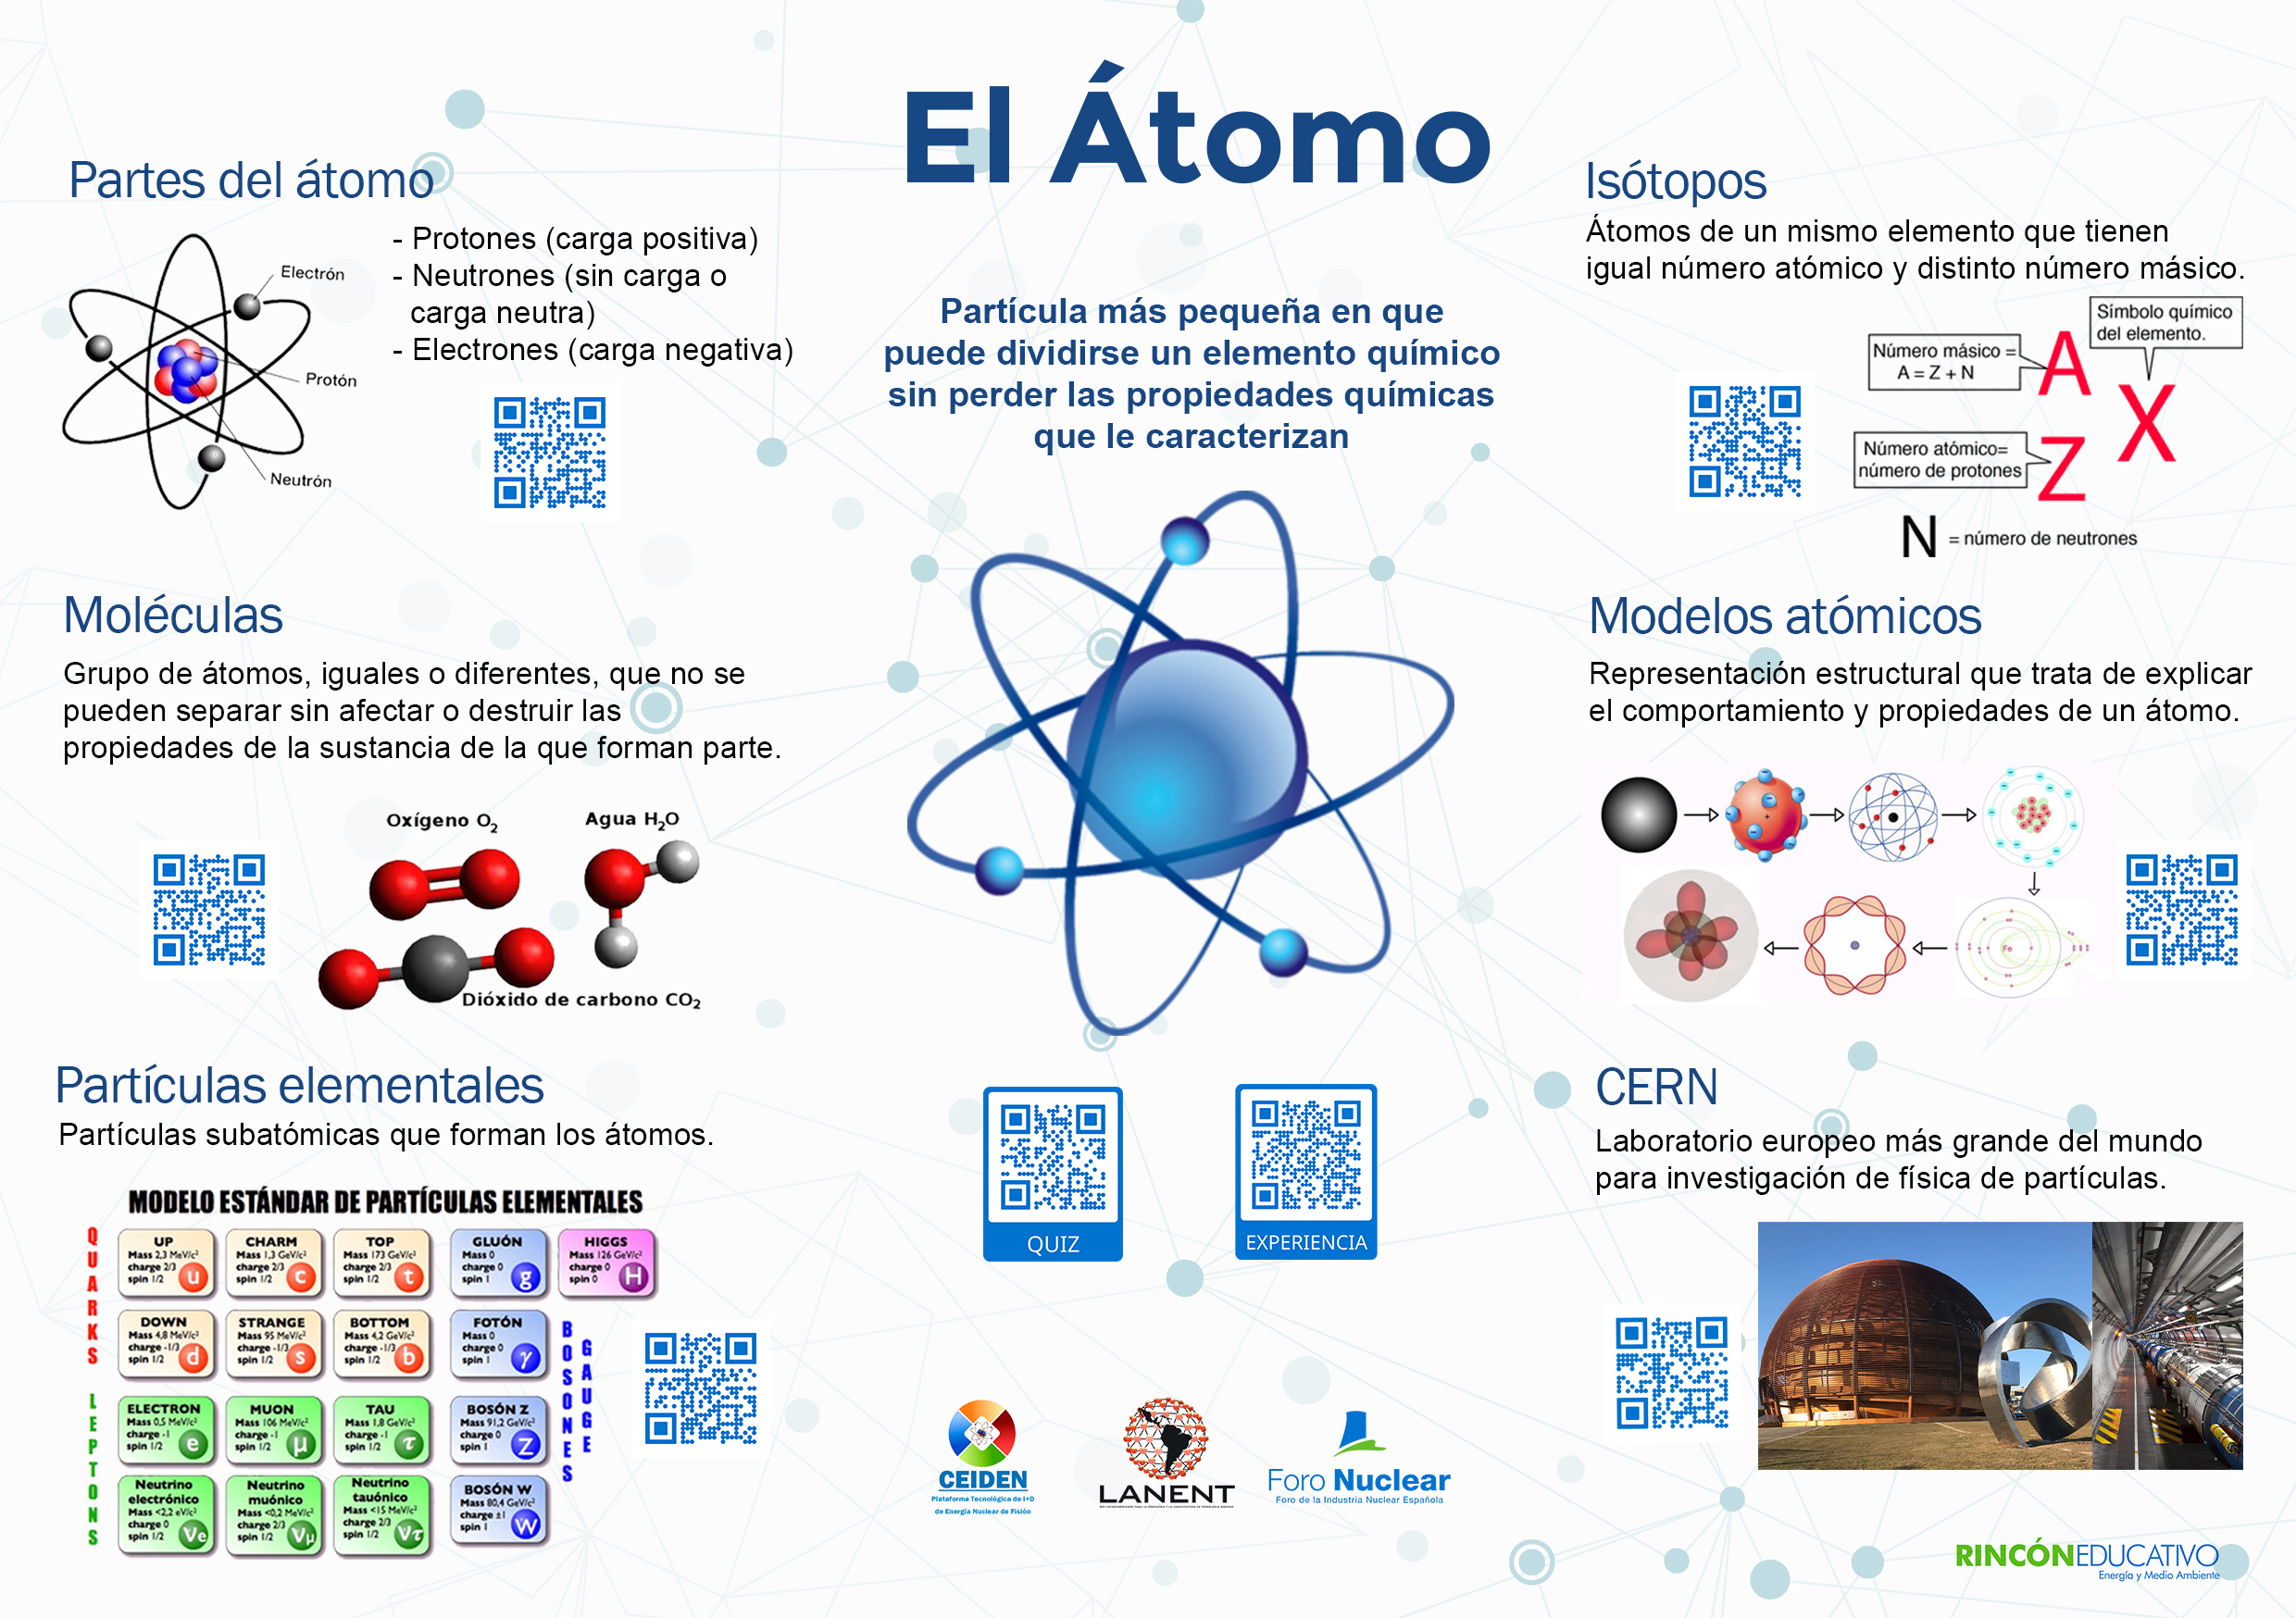 El átomo (Español)